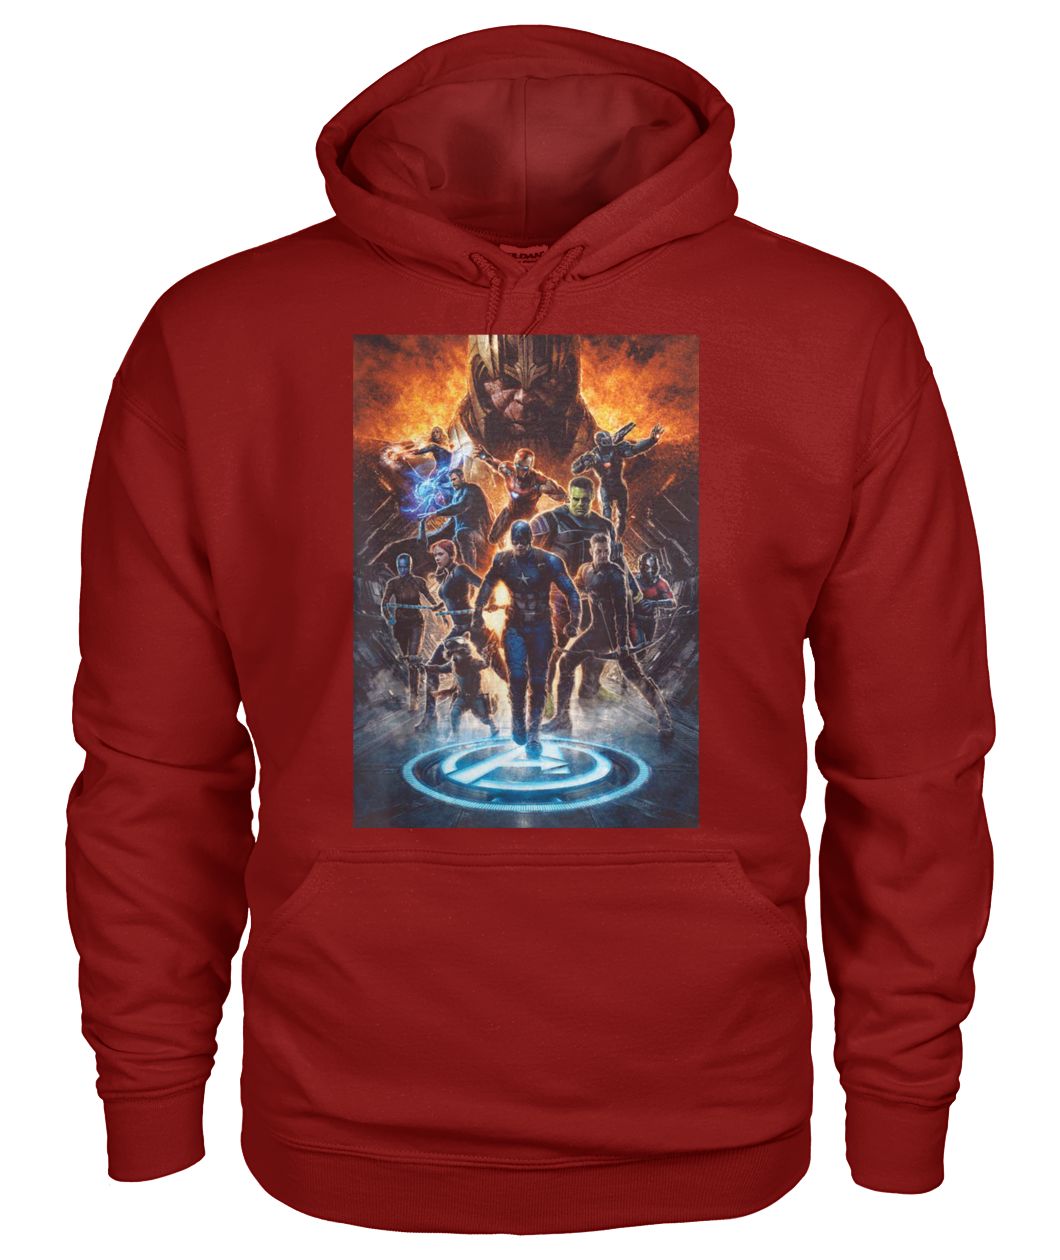 Marvel avengers endgame earth's mightiest heroes gildan hoodie